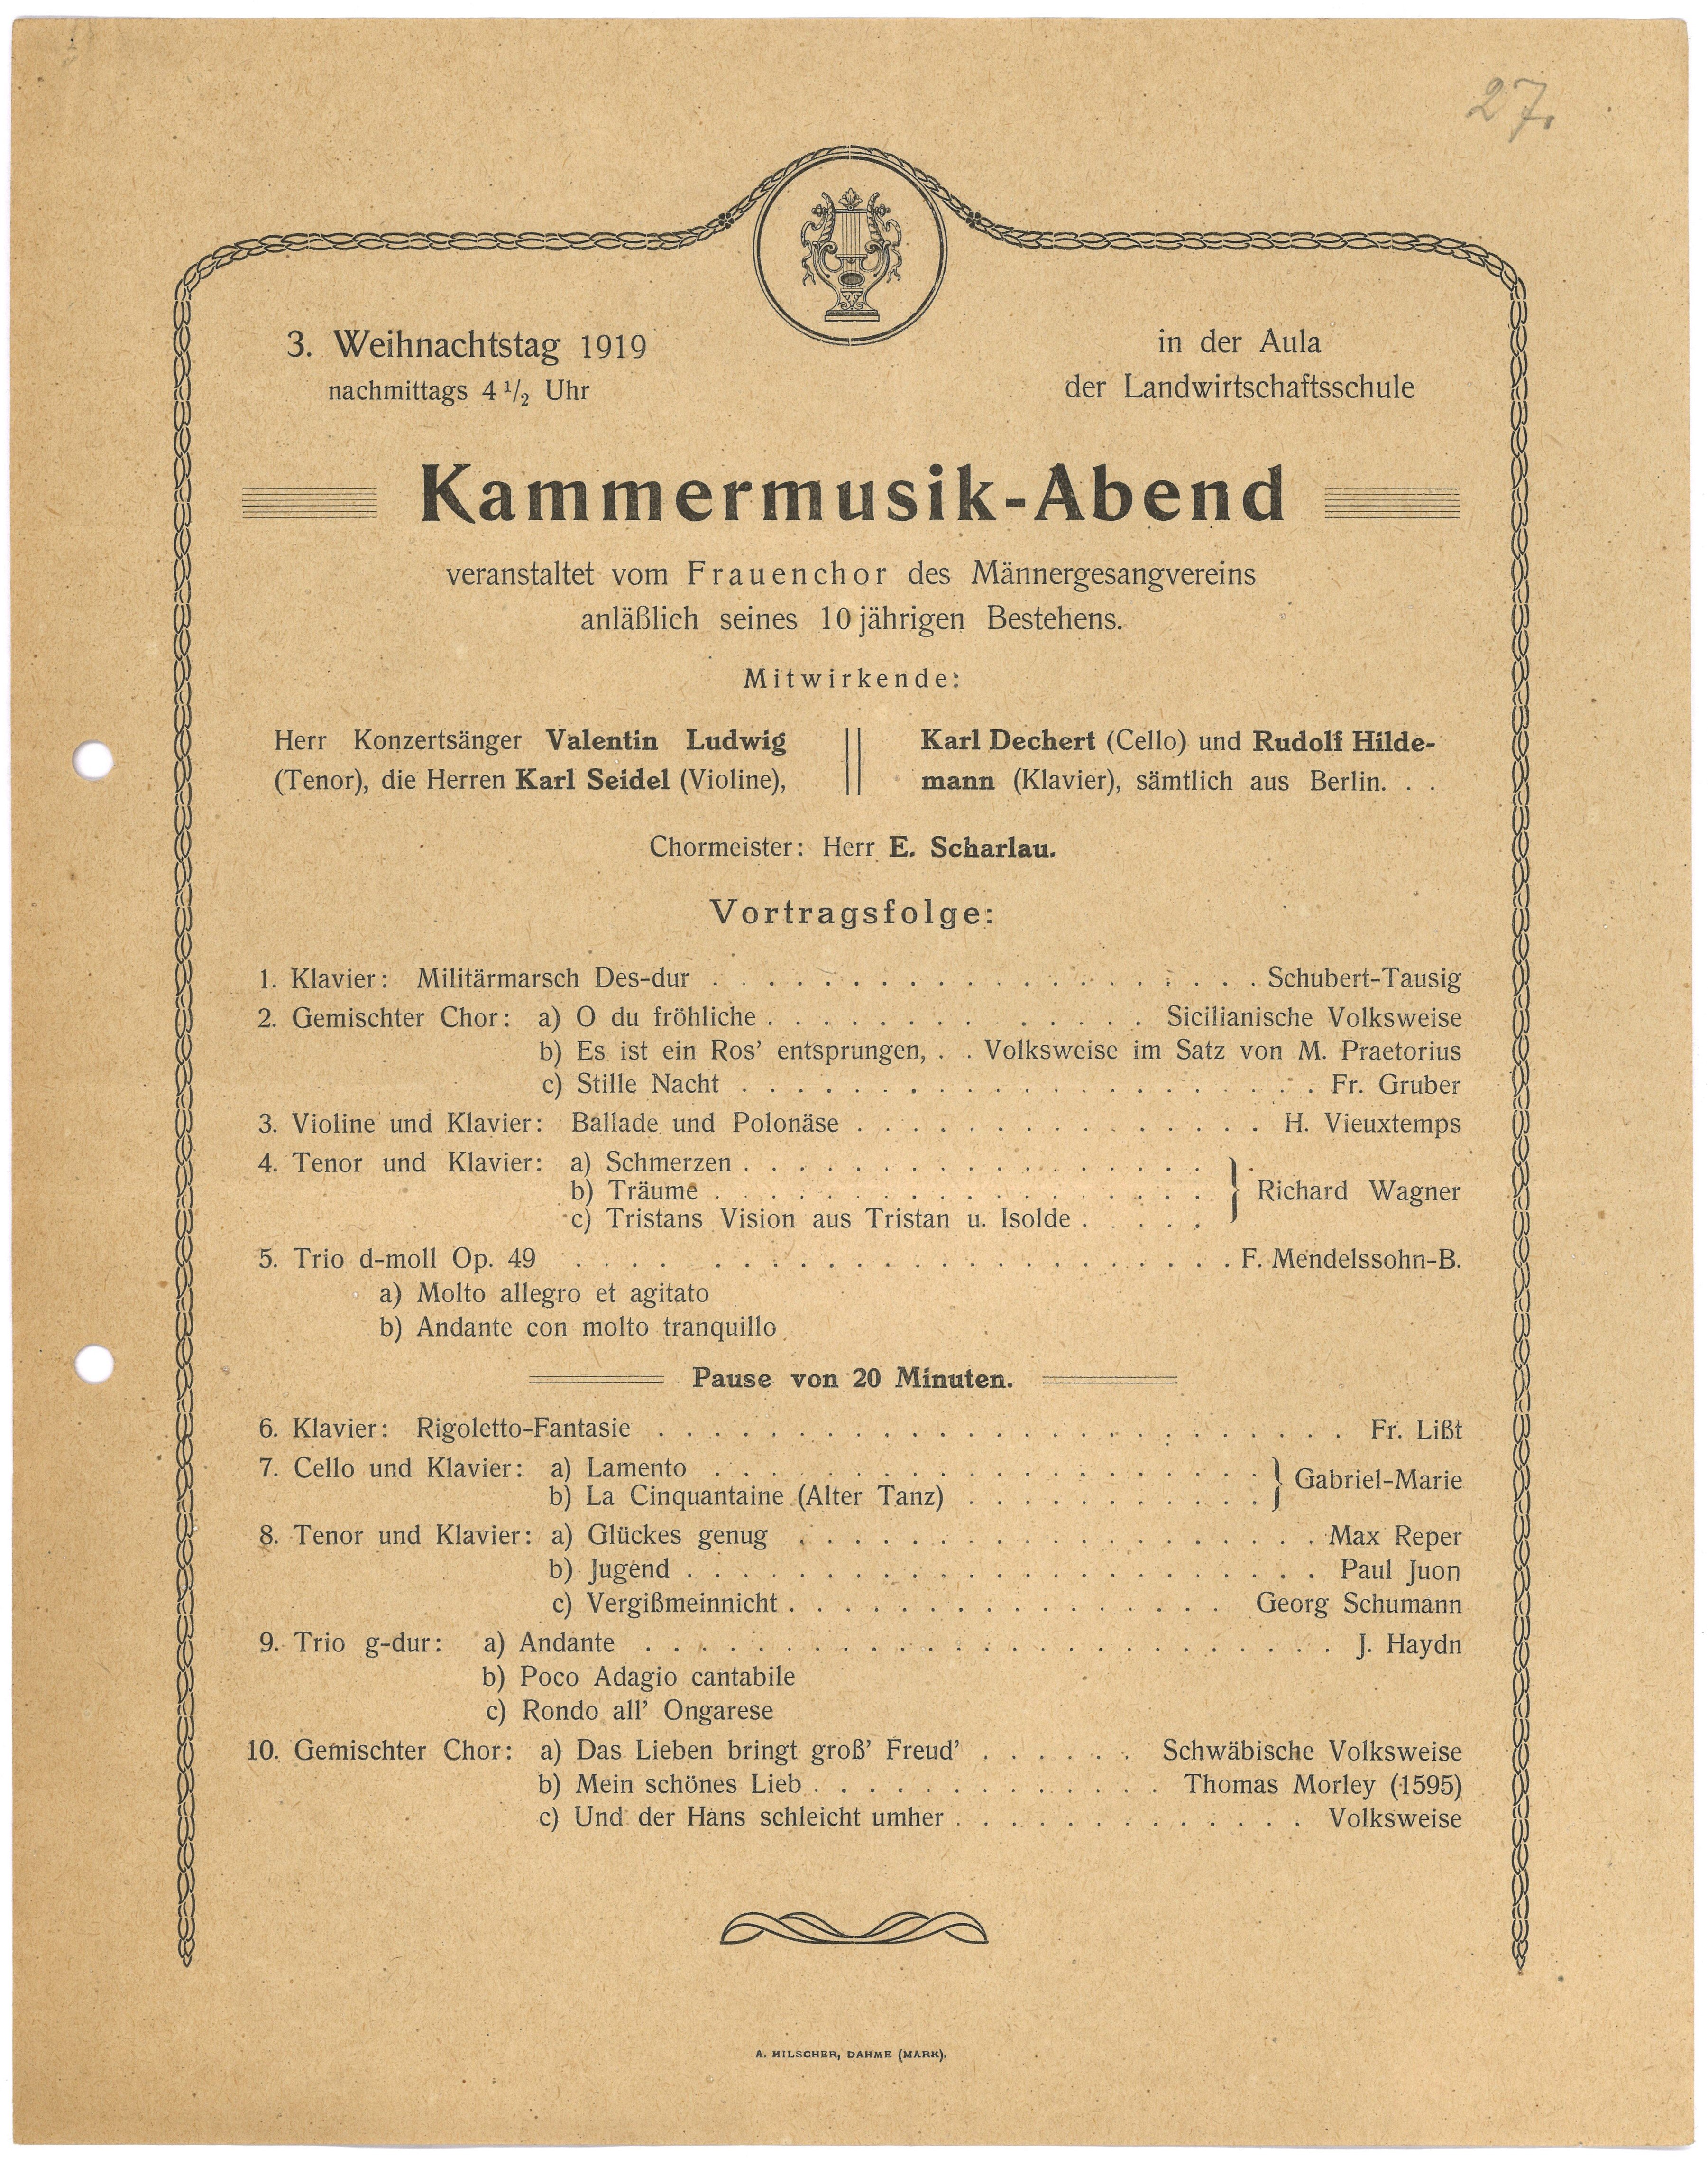 Konzertprogramm für den Kammermusikabend des Frauenchors des Männergesangvereins in Dahme (Mark) am 27. Dezember 1919 (Landesgeschichtliche Vereinigung für die Mark Brandenburg e.V., Archiv CC BY)